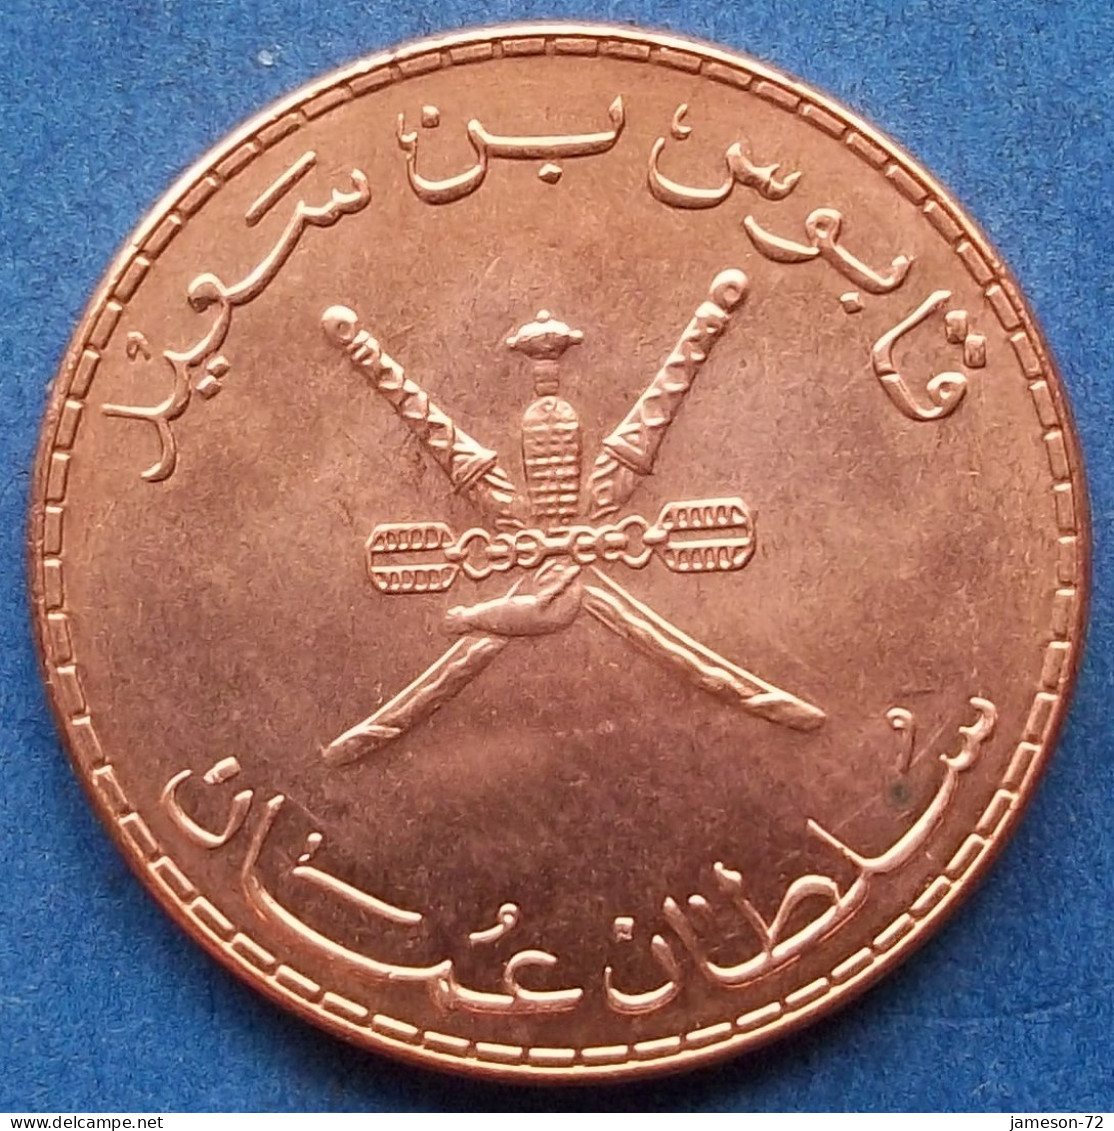 OMAN - 10 Baisa AH1432 2011AD KM# 151 Sultan Quabus Bin Sa'id Reform Coinage (AH1392 / 1972) - Edelweiss Coins - Omán